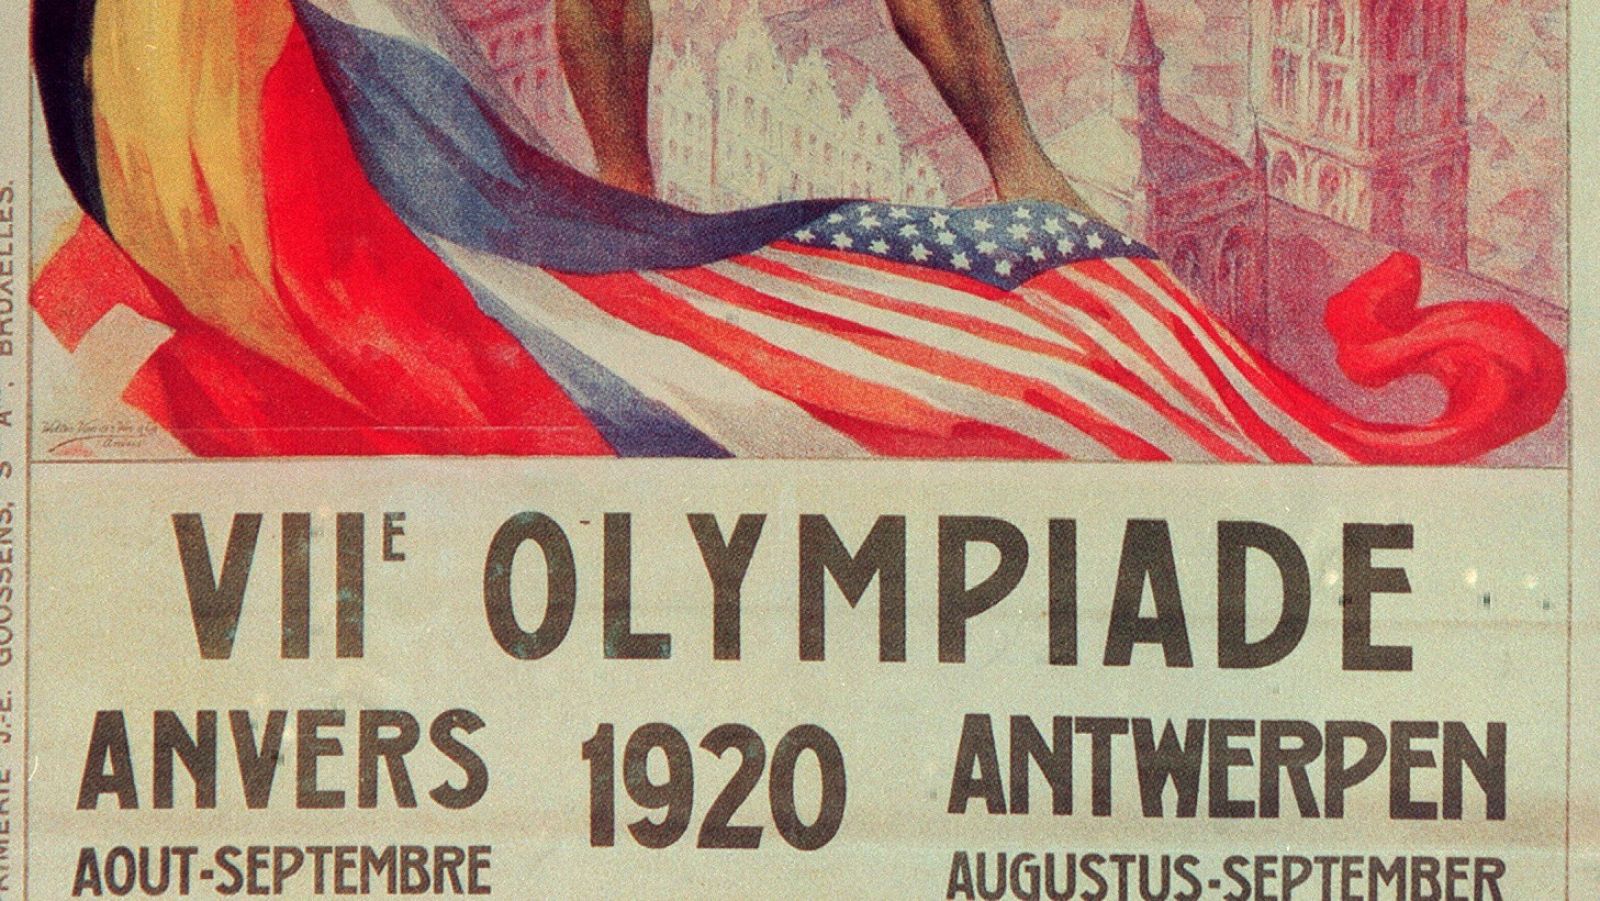 Extracto del cartel oficial de los Juegos Olímpicos de Amberes en 1920.